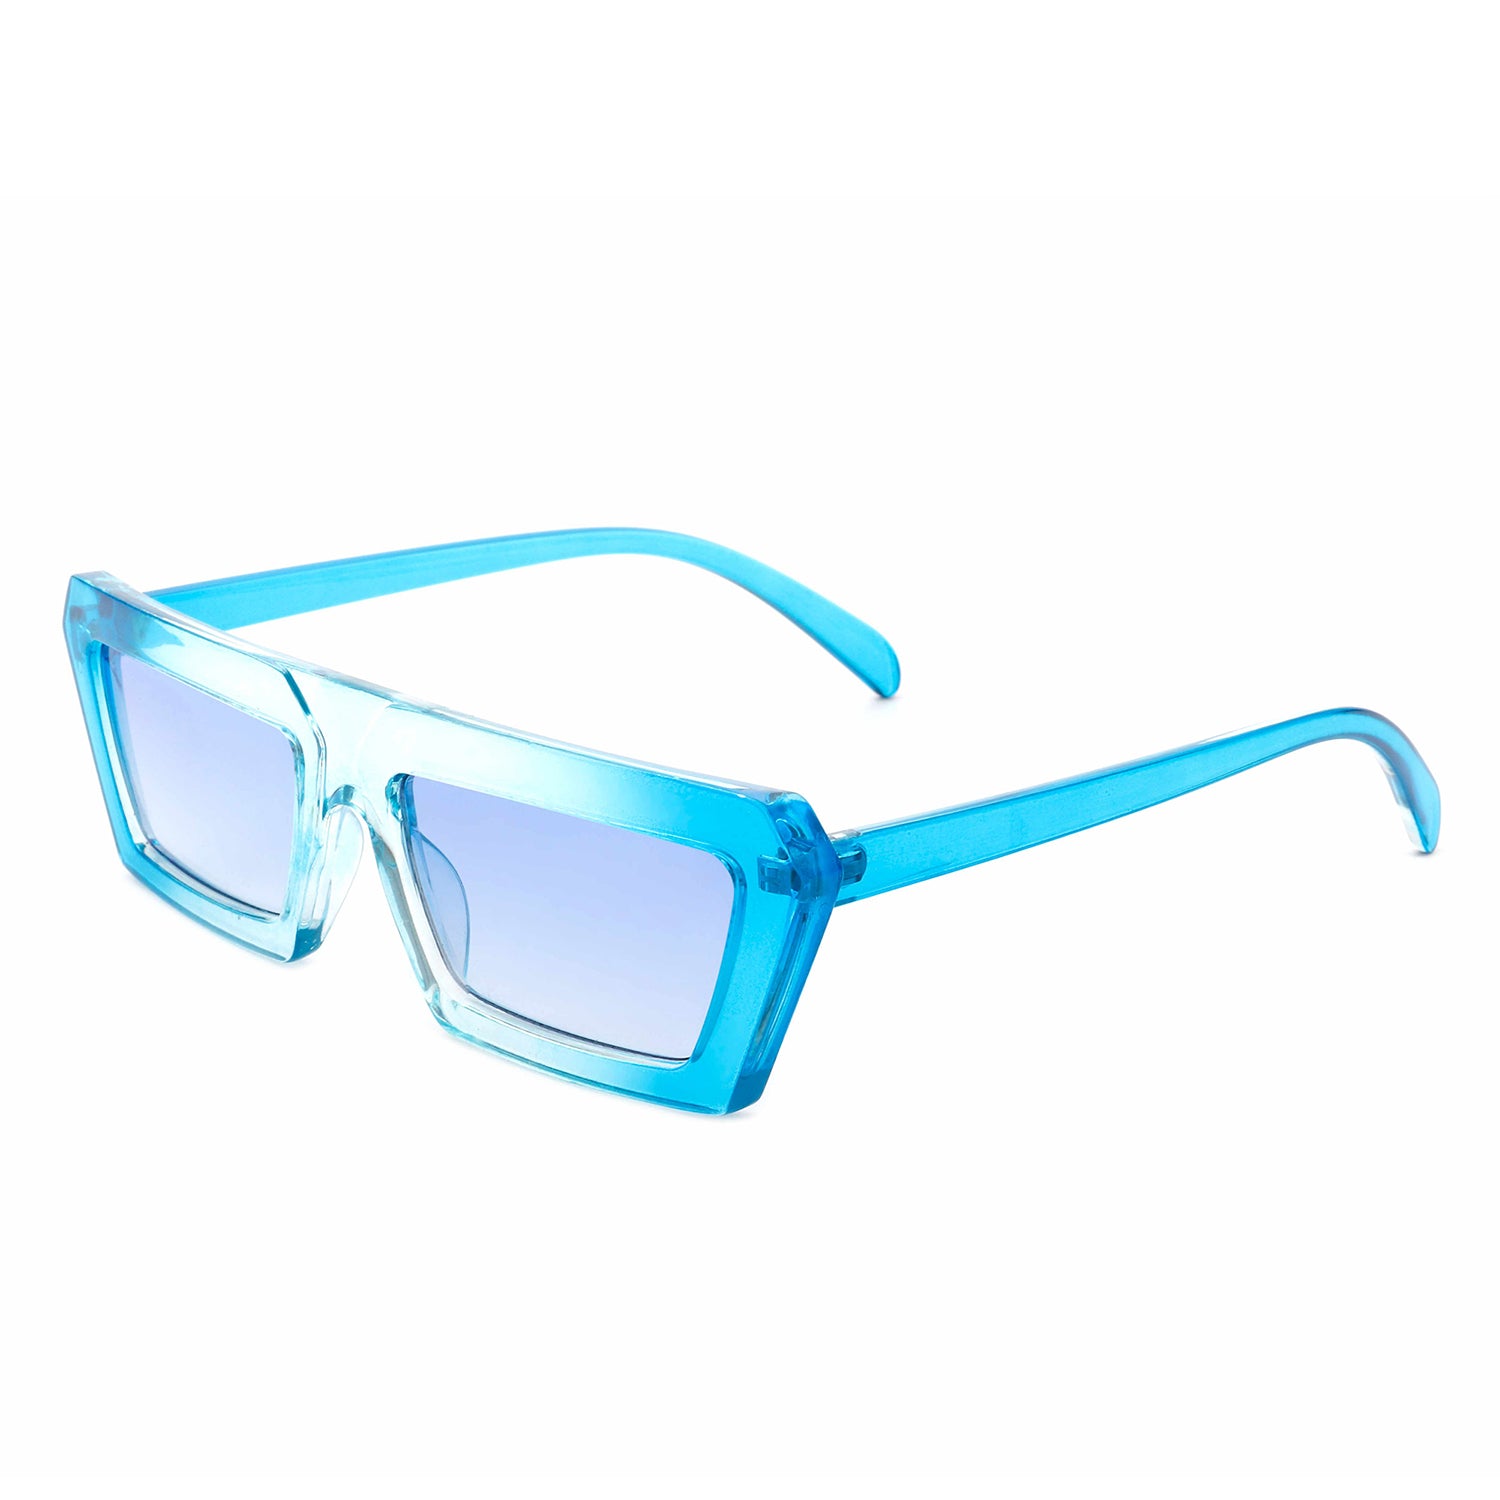 Frye Asher Blue Light Glasses Square Sunglasses